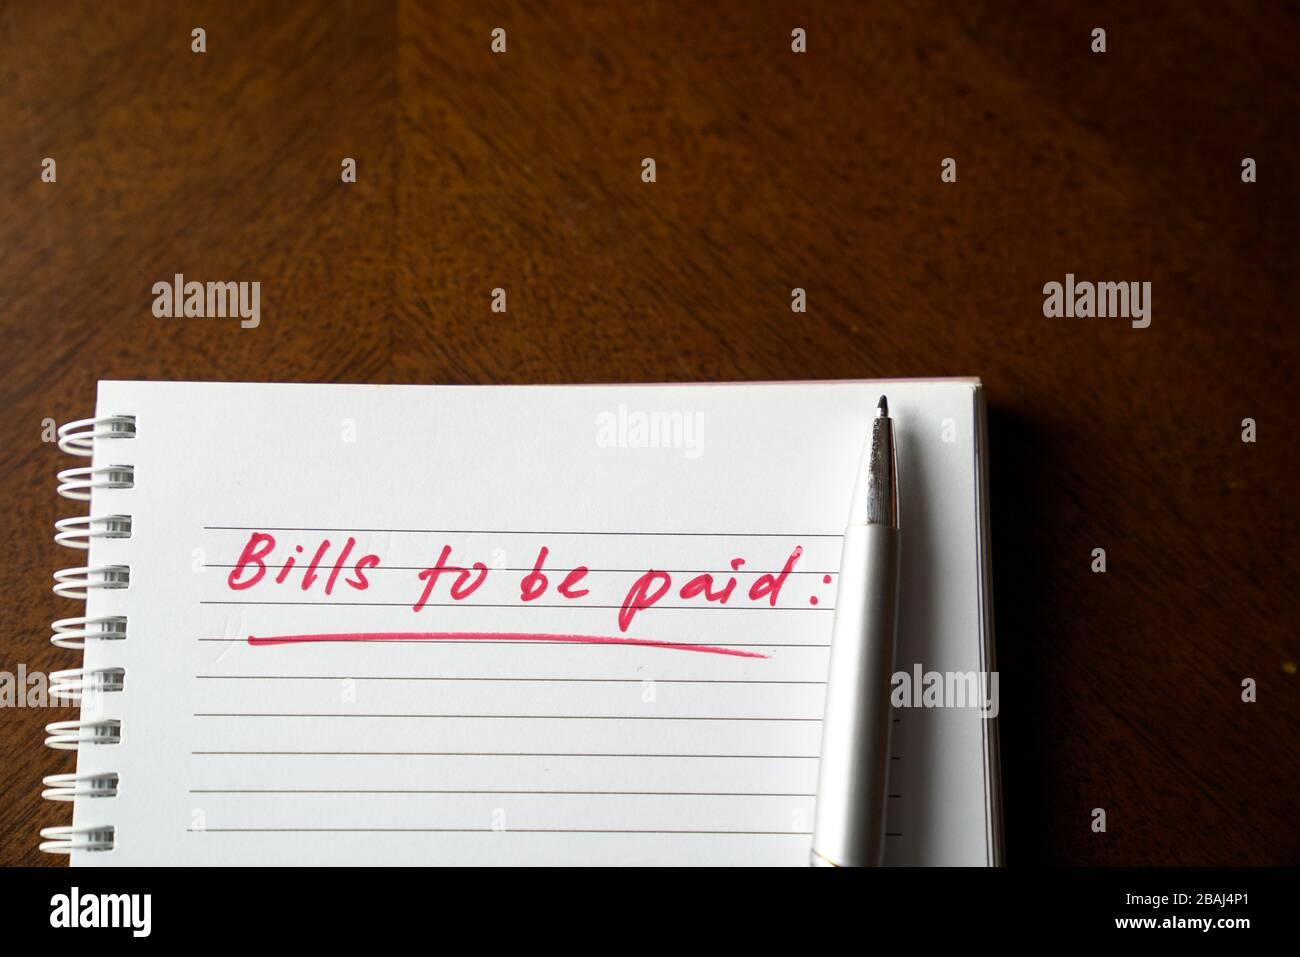 Fatture da pagare, scritte in rosso sul notebook. Concetto di disoccupazione o recessione. Foto Stock